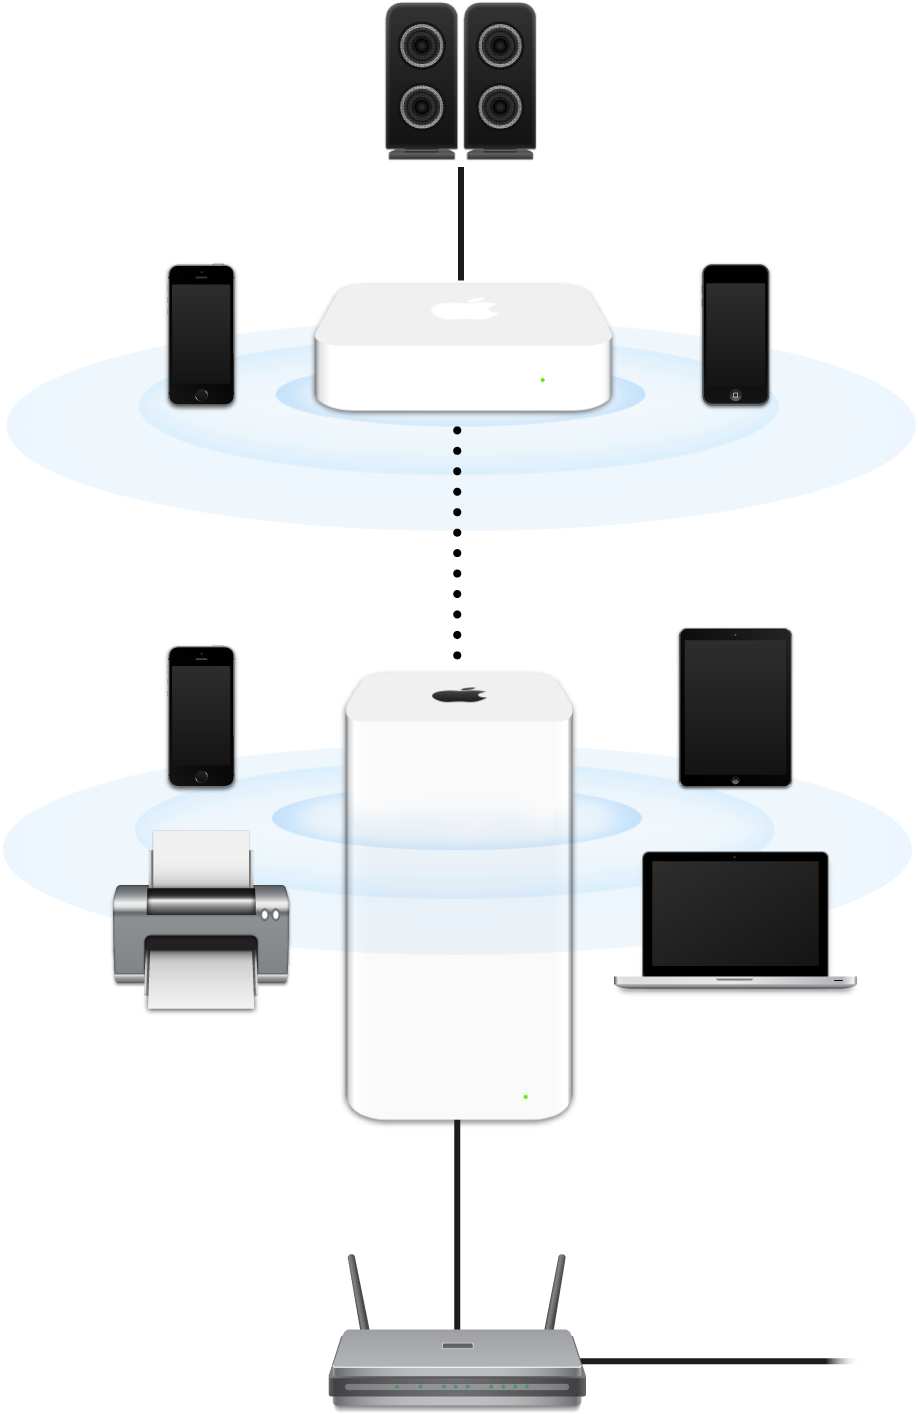 Stacje bazowe AirPort Extreme i AirPort Express podłączone do modemu i łączące się z różnymi urządzeniami